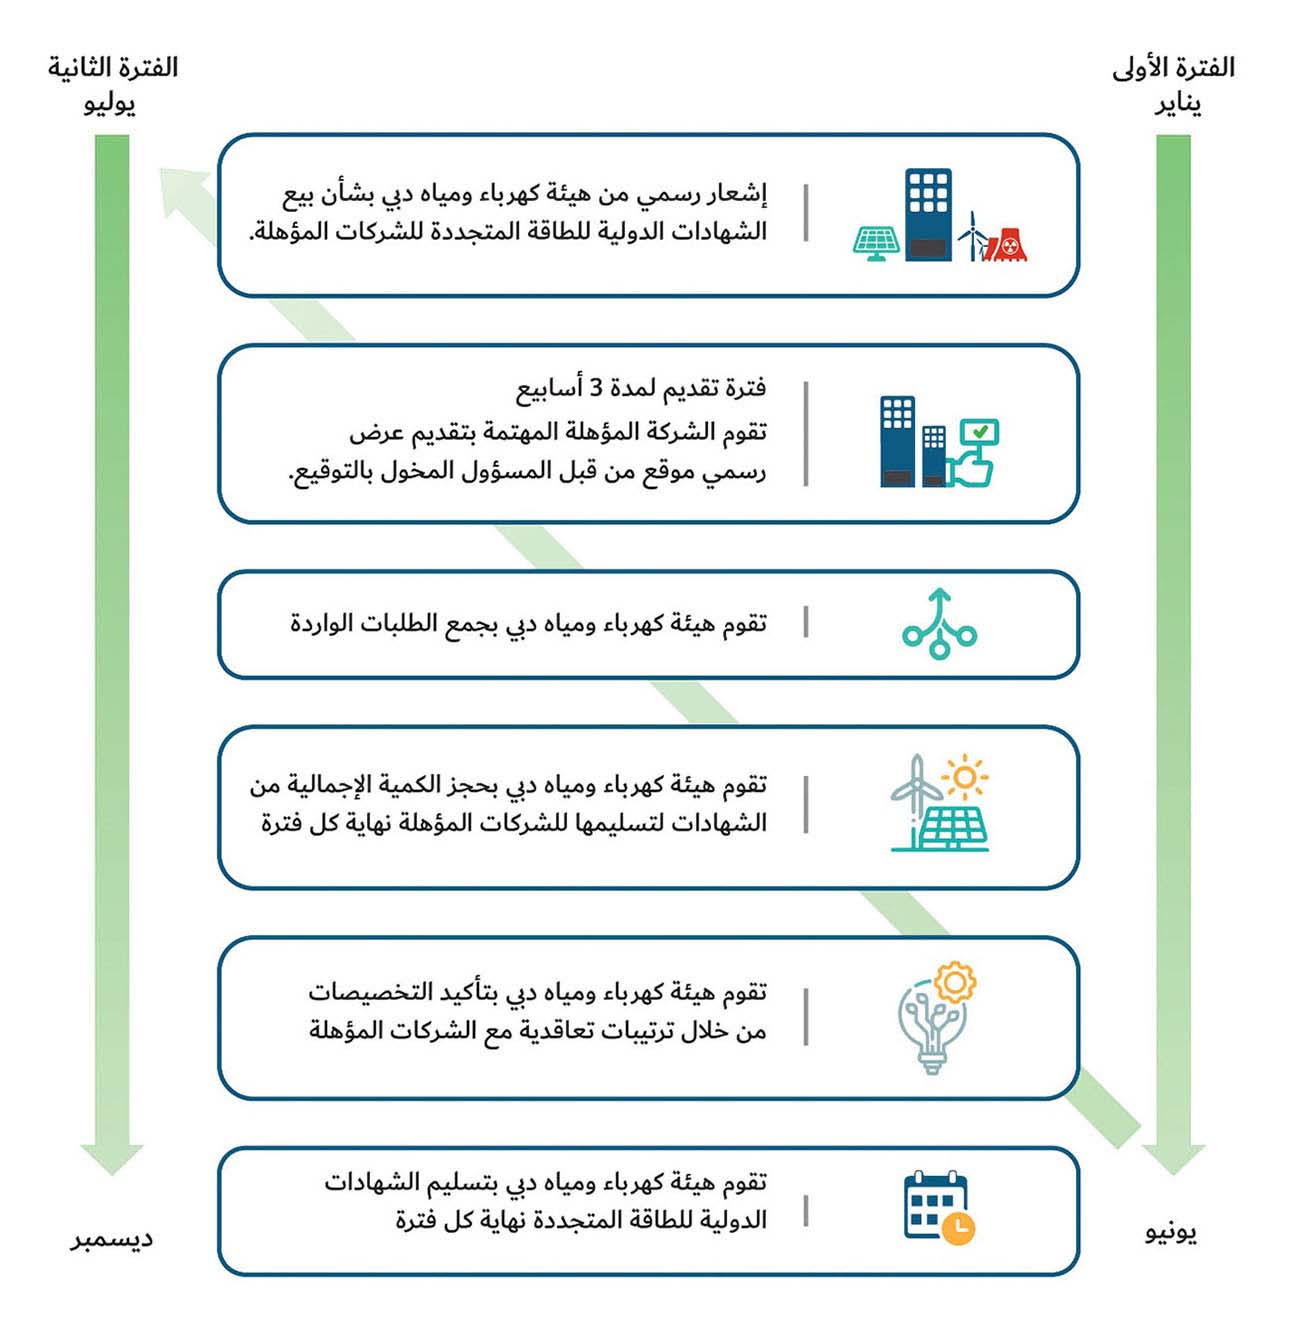 إجراءات التخصيص التفضيلي لشراء الشهادات الدولية للطاقة المتجددة للشركات المؤهلة بموجب سياسة أجندة دبي الاقتصادية (D33)